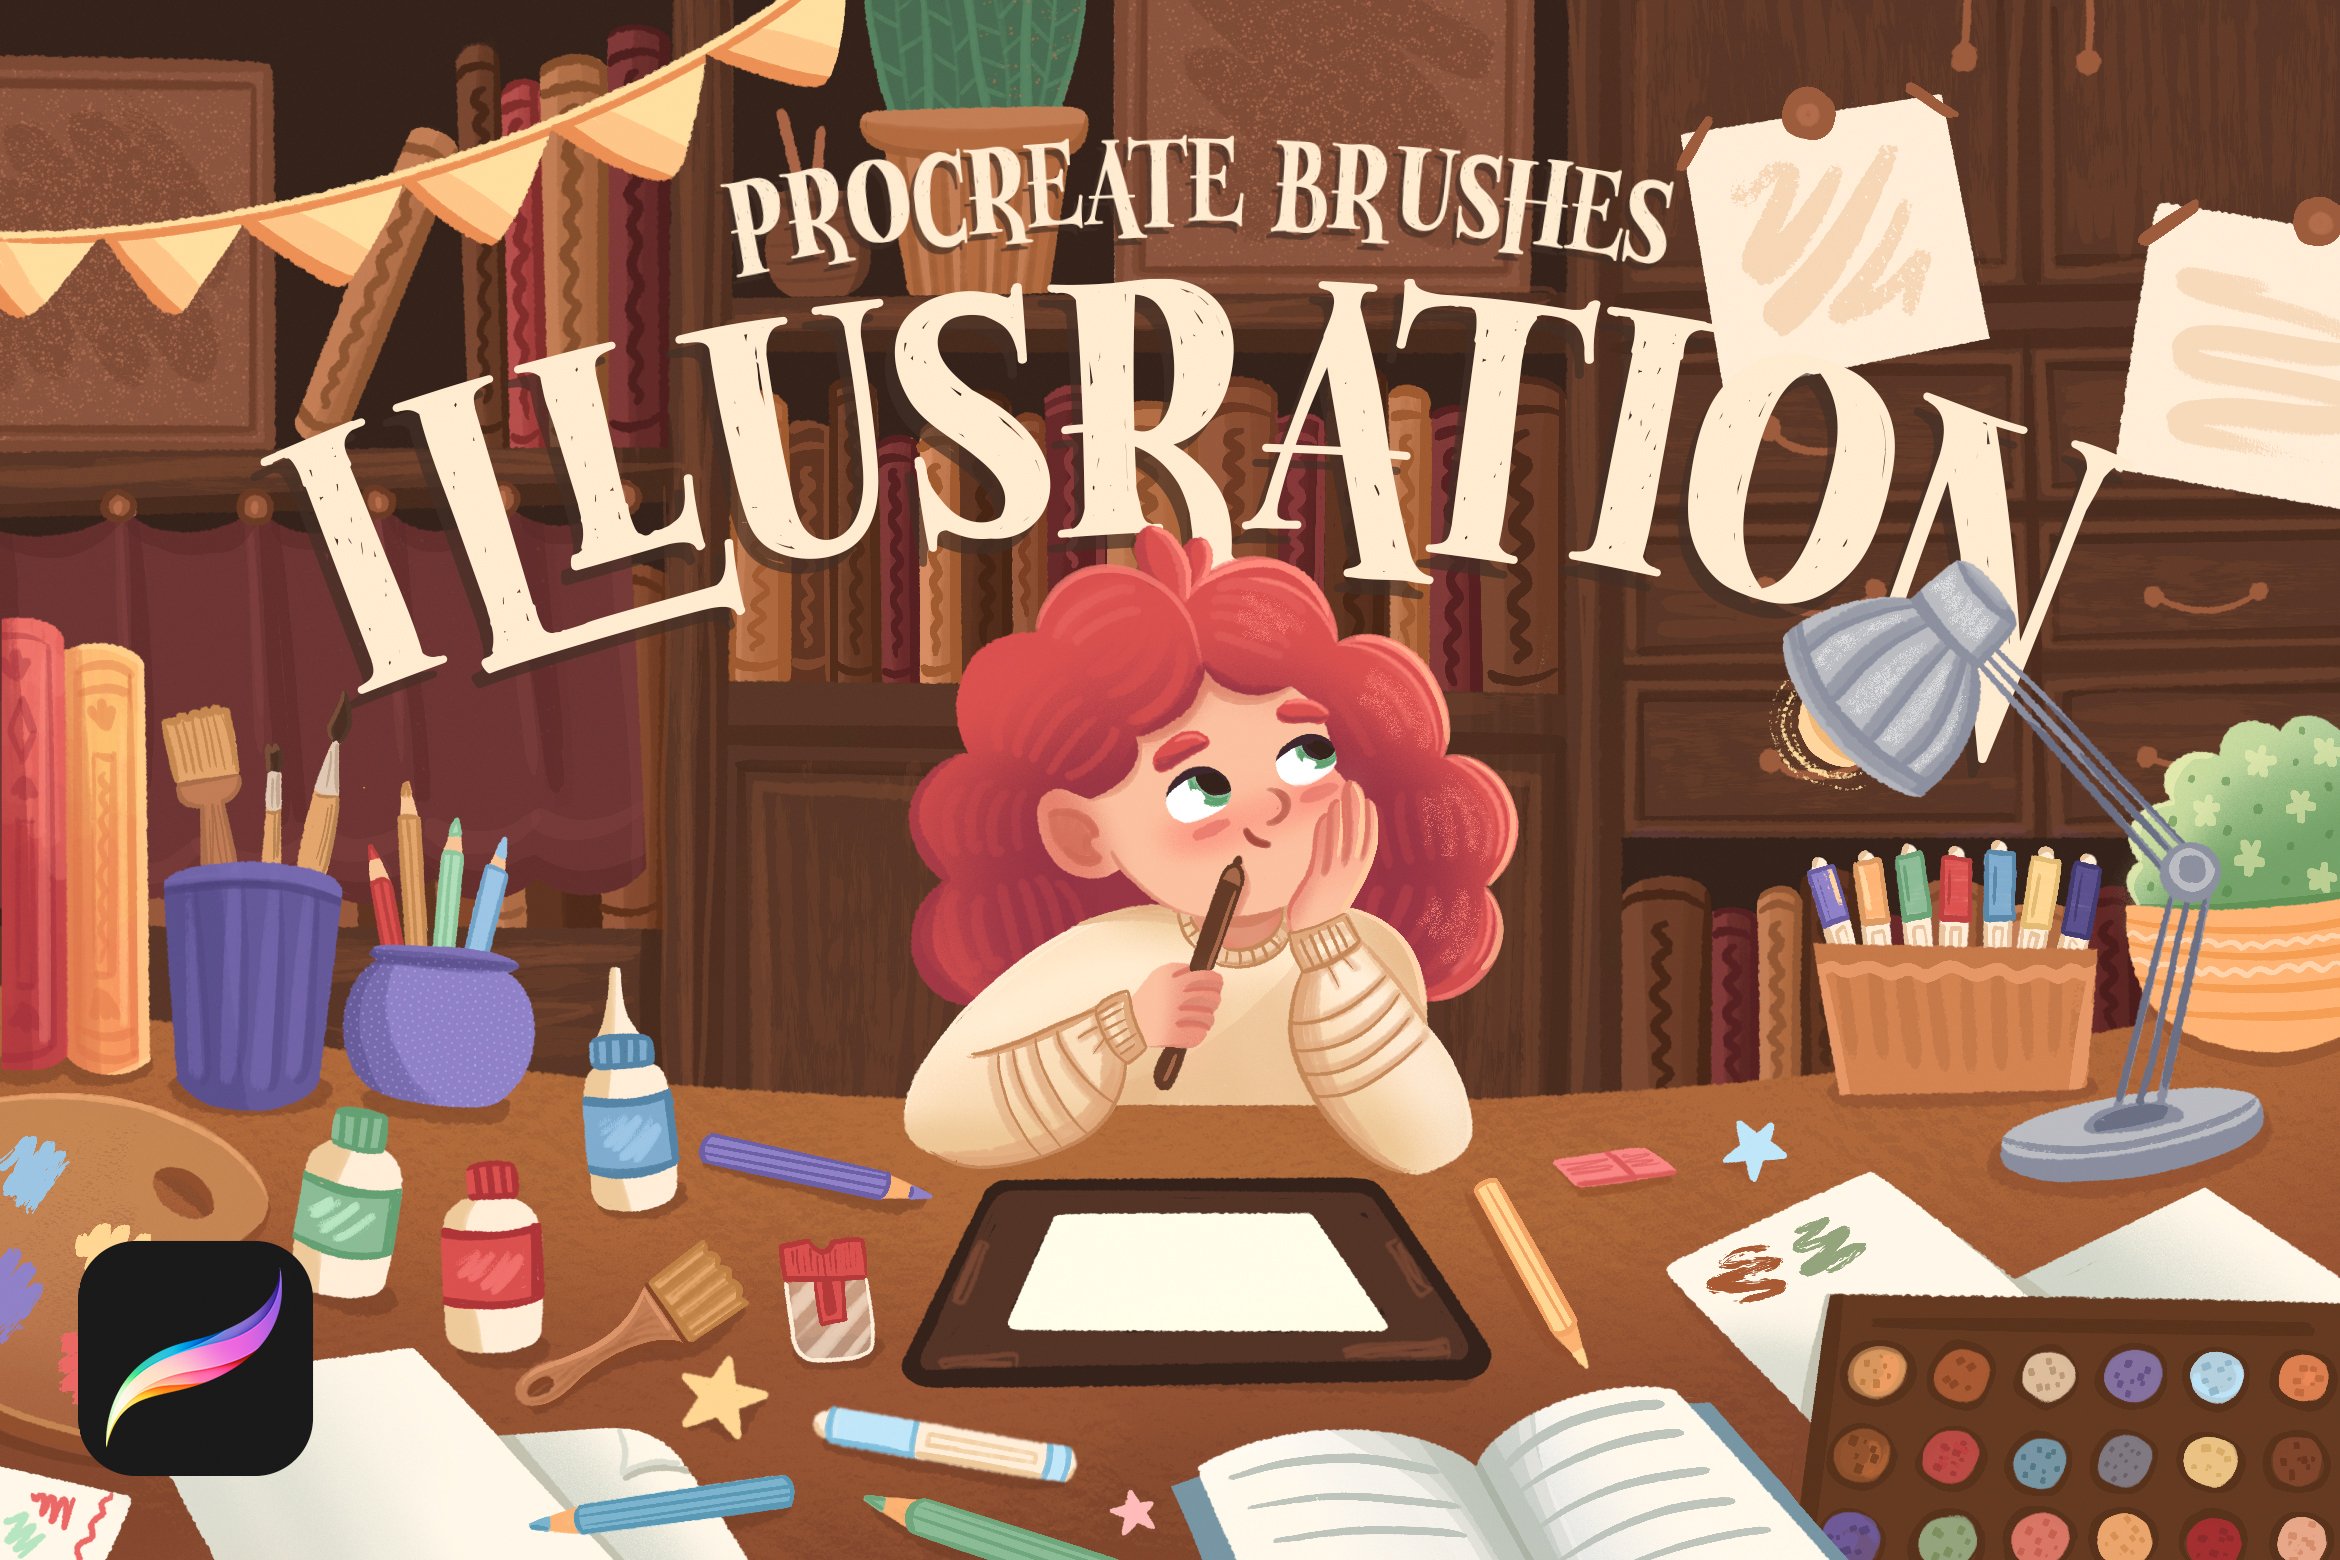 Illustration Brushes 2: Procreatecover image.